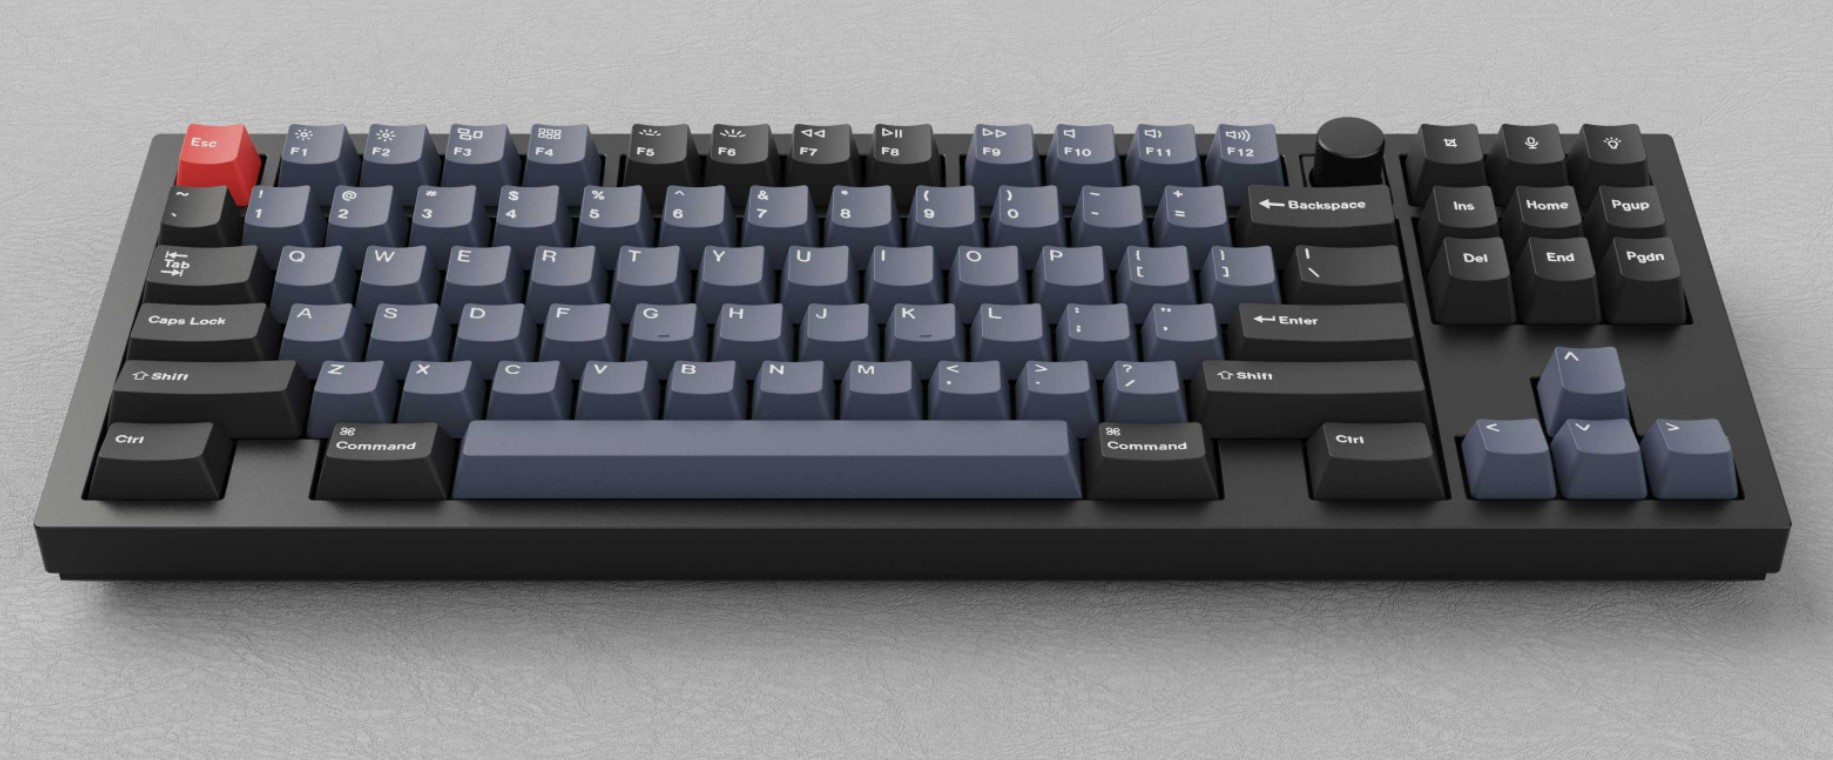 Keychron Q85 mechanical keyboard 